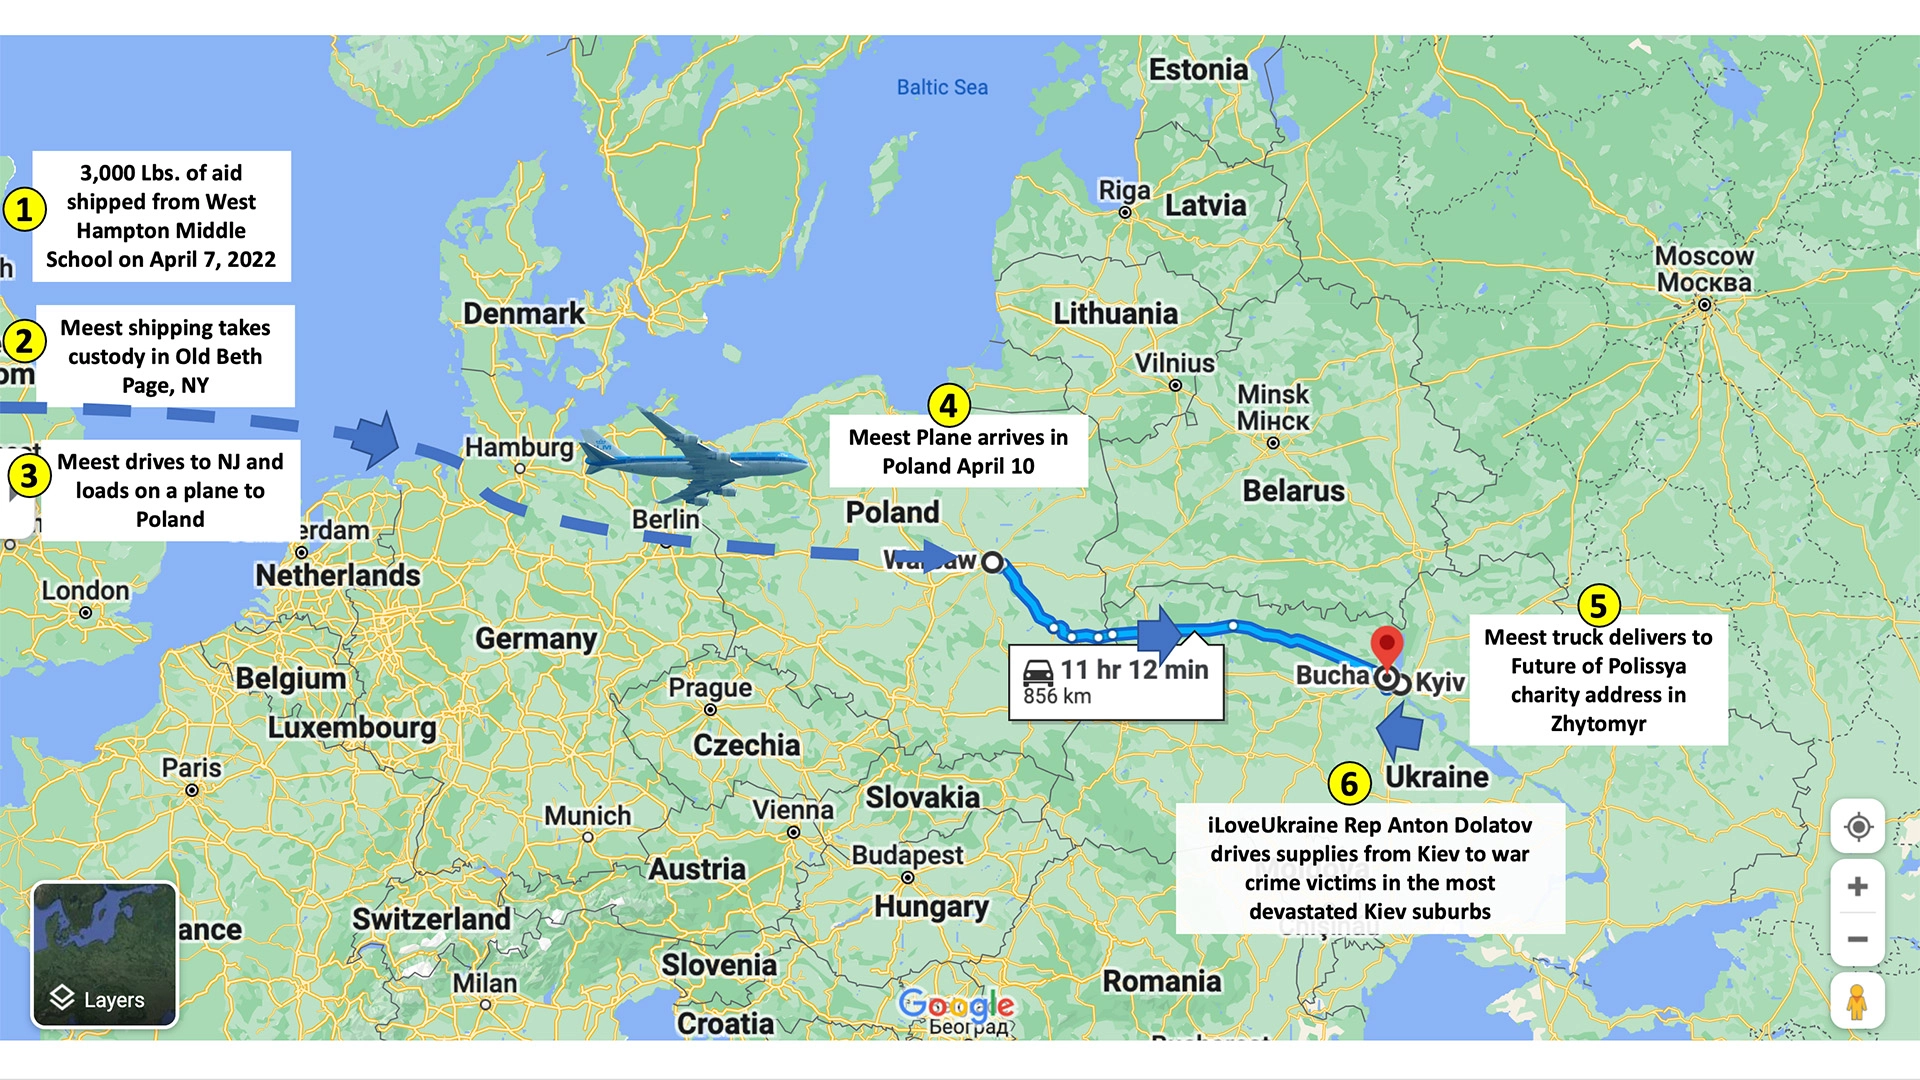 Map of iLoveUkraine shipping route to Bucha, Ukraine war crime victims.